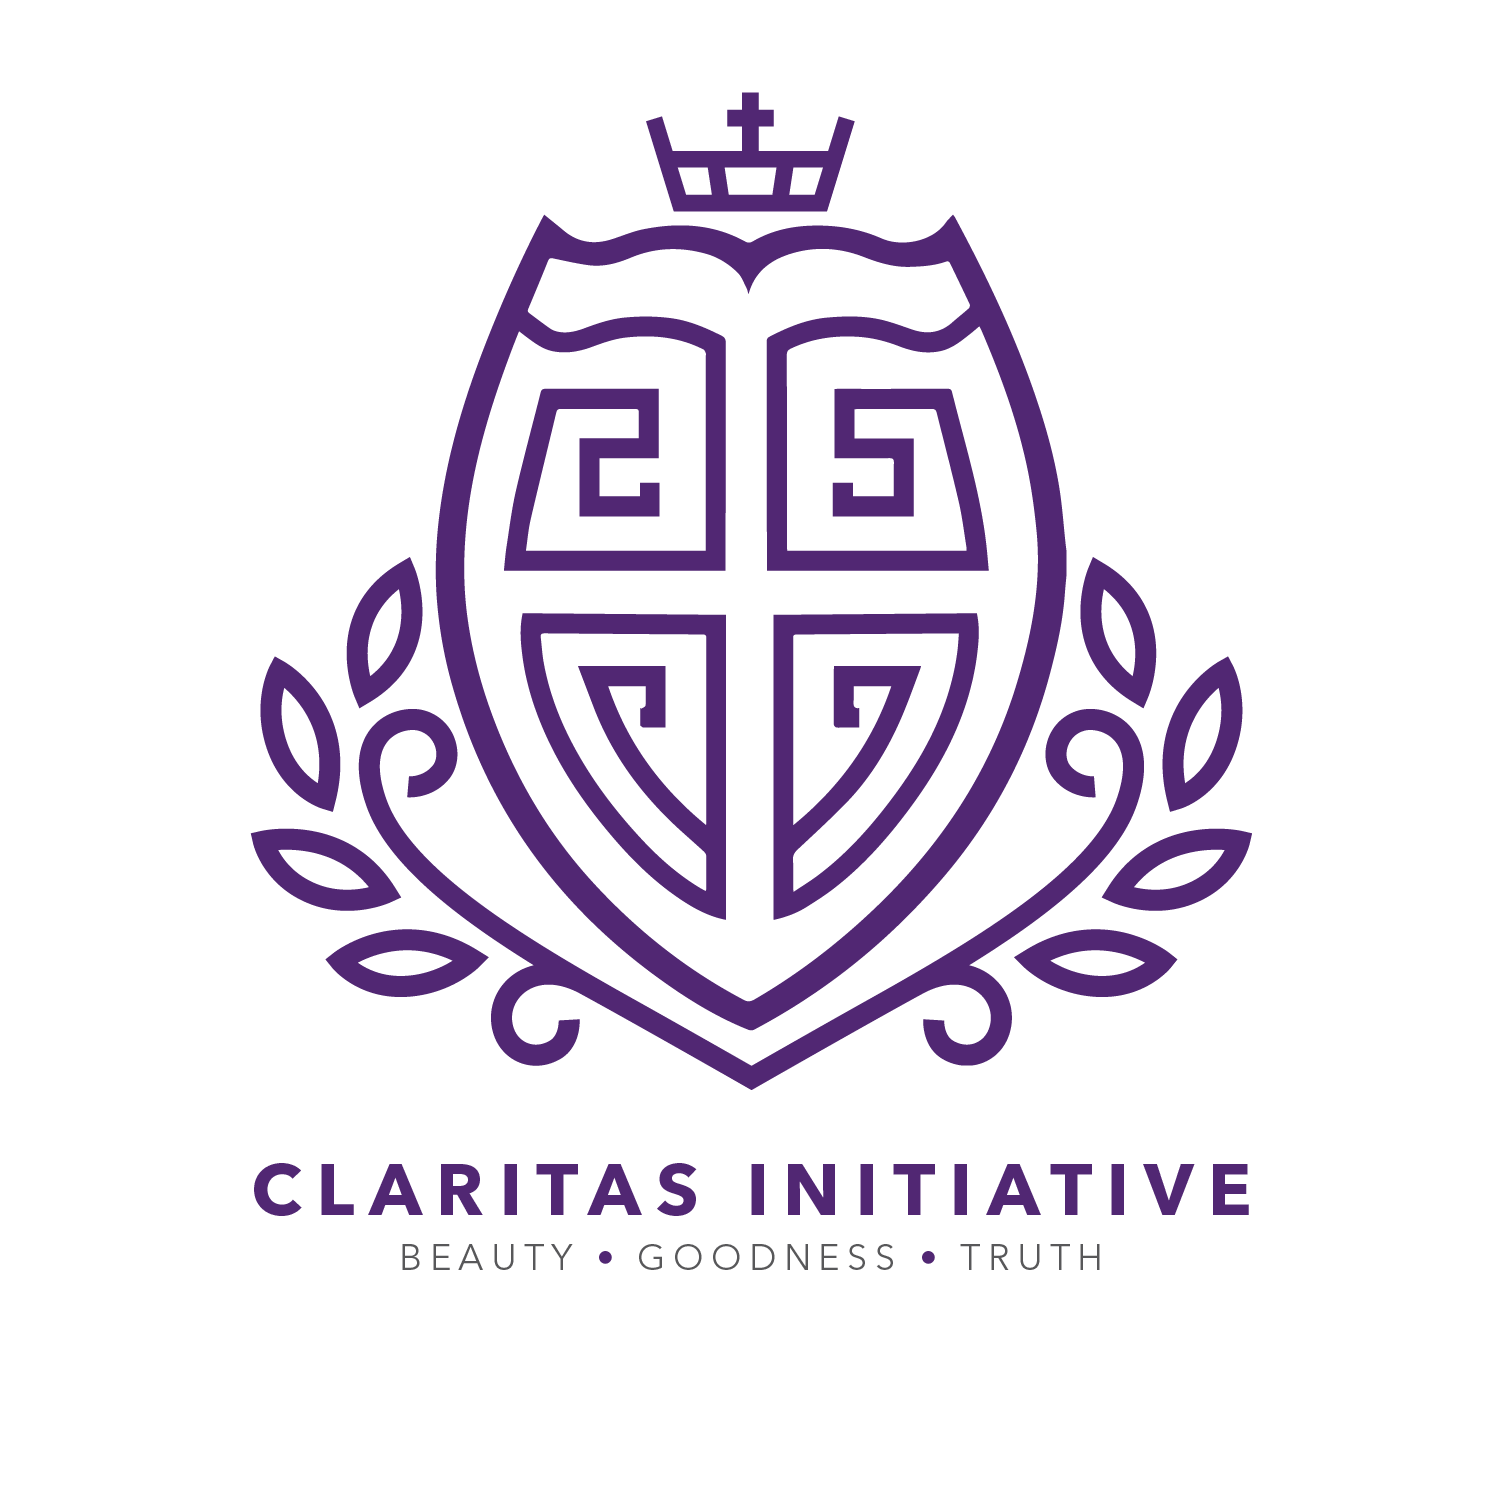 initiative logo